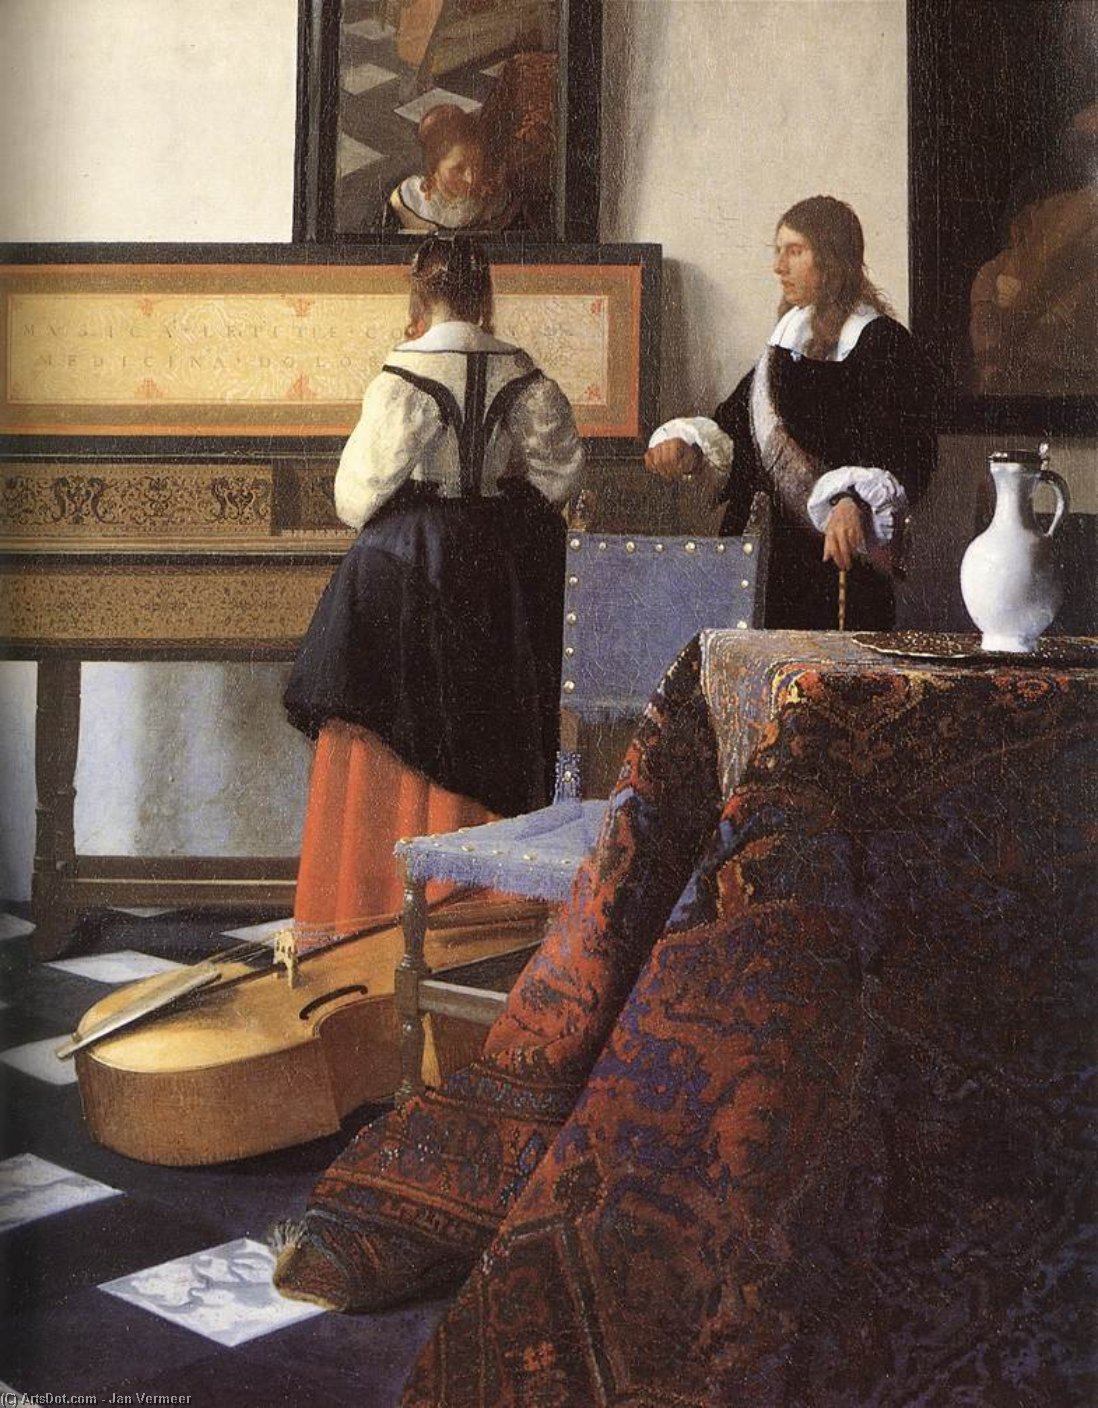 Вермеер картины. Ян Вермеер. Ян Вермеер (1632 - 1675) «искусство живописи». Ян Верме́ер картины. Вермеер Дельфтский.